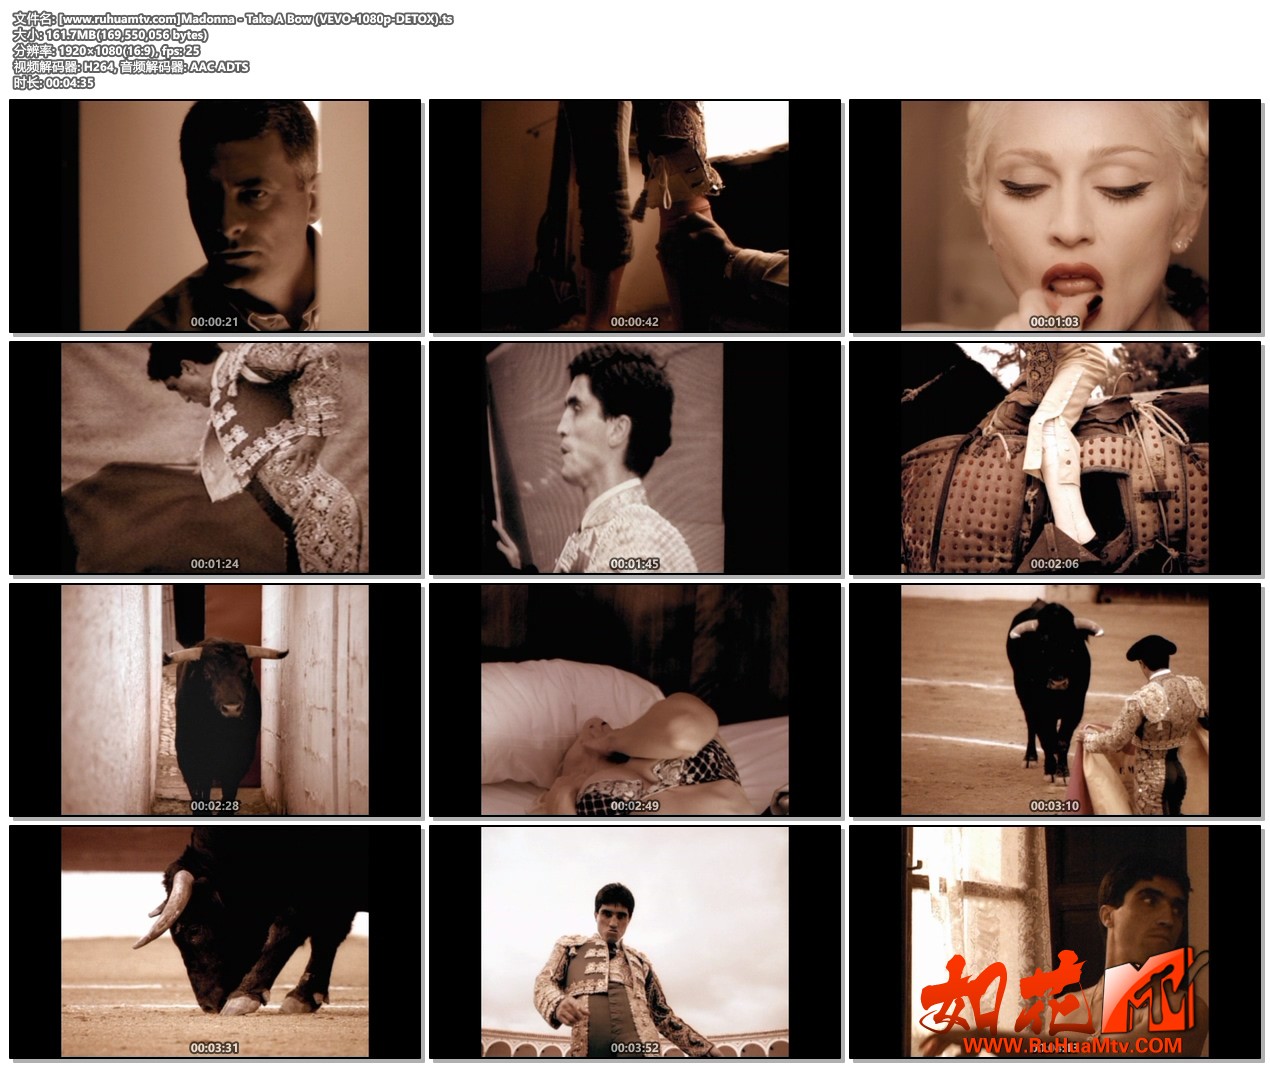 [www.ruhuamtv.com]Madonna - Take A Bow (VEVO-1080p-DETOX).ts.jpg